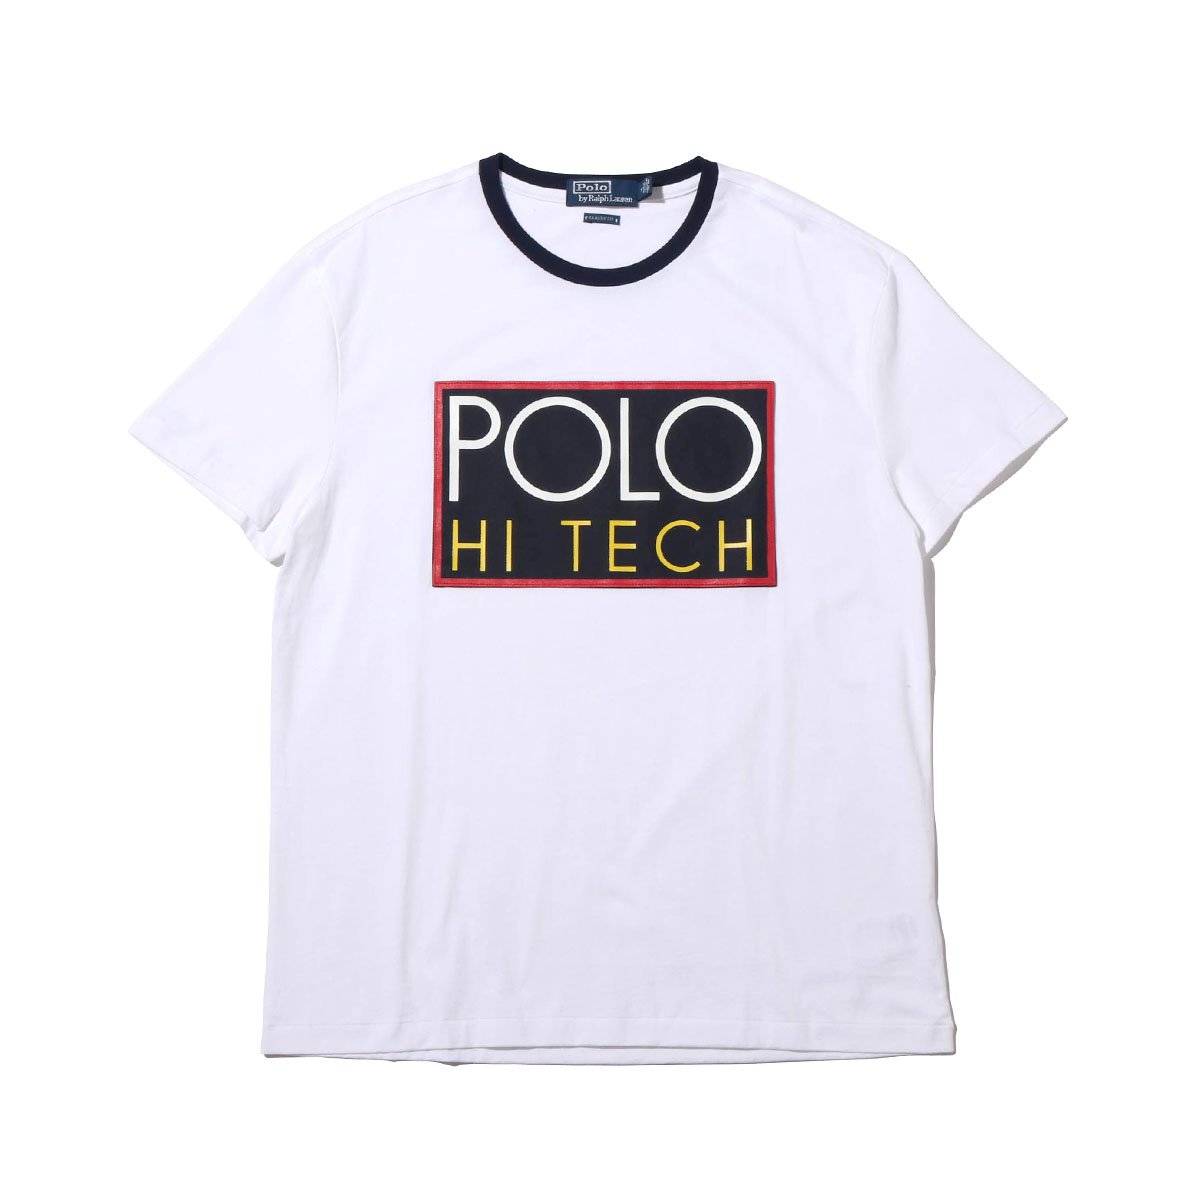 【お取り寄せ商品】【POLO RALPH LAUREN 2018.HOLIDAY】 POLO RALPH LAUREN SSCNM1-SHORT SLEEVE-T-SHIRT(ポロ ラルフローレン SSCNM1 ショートスリーブ Tシャツ)WHITE【メンズ 半袖Tシャツ】18HO-I at20-c